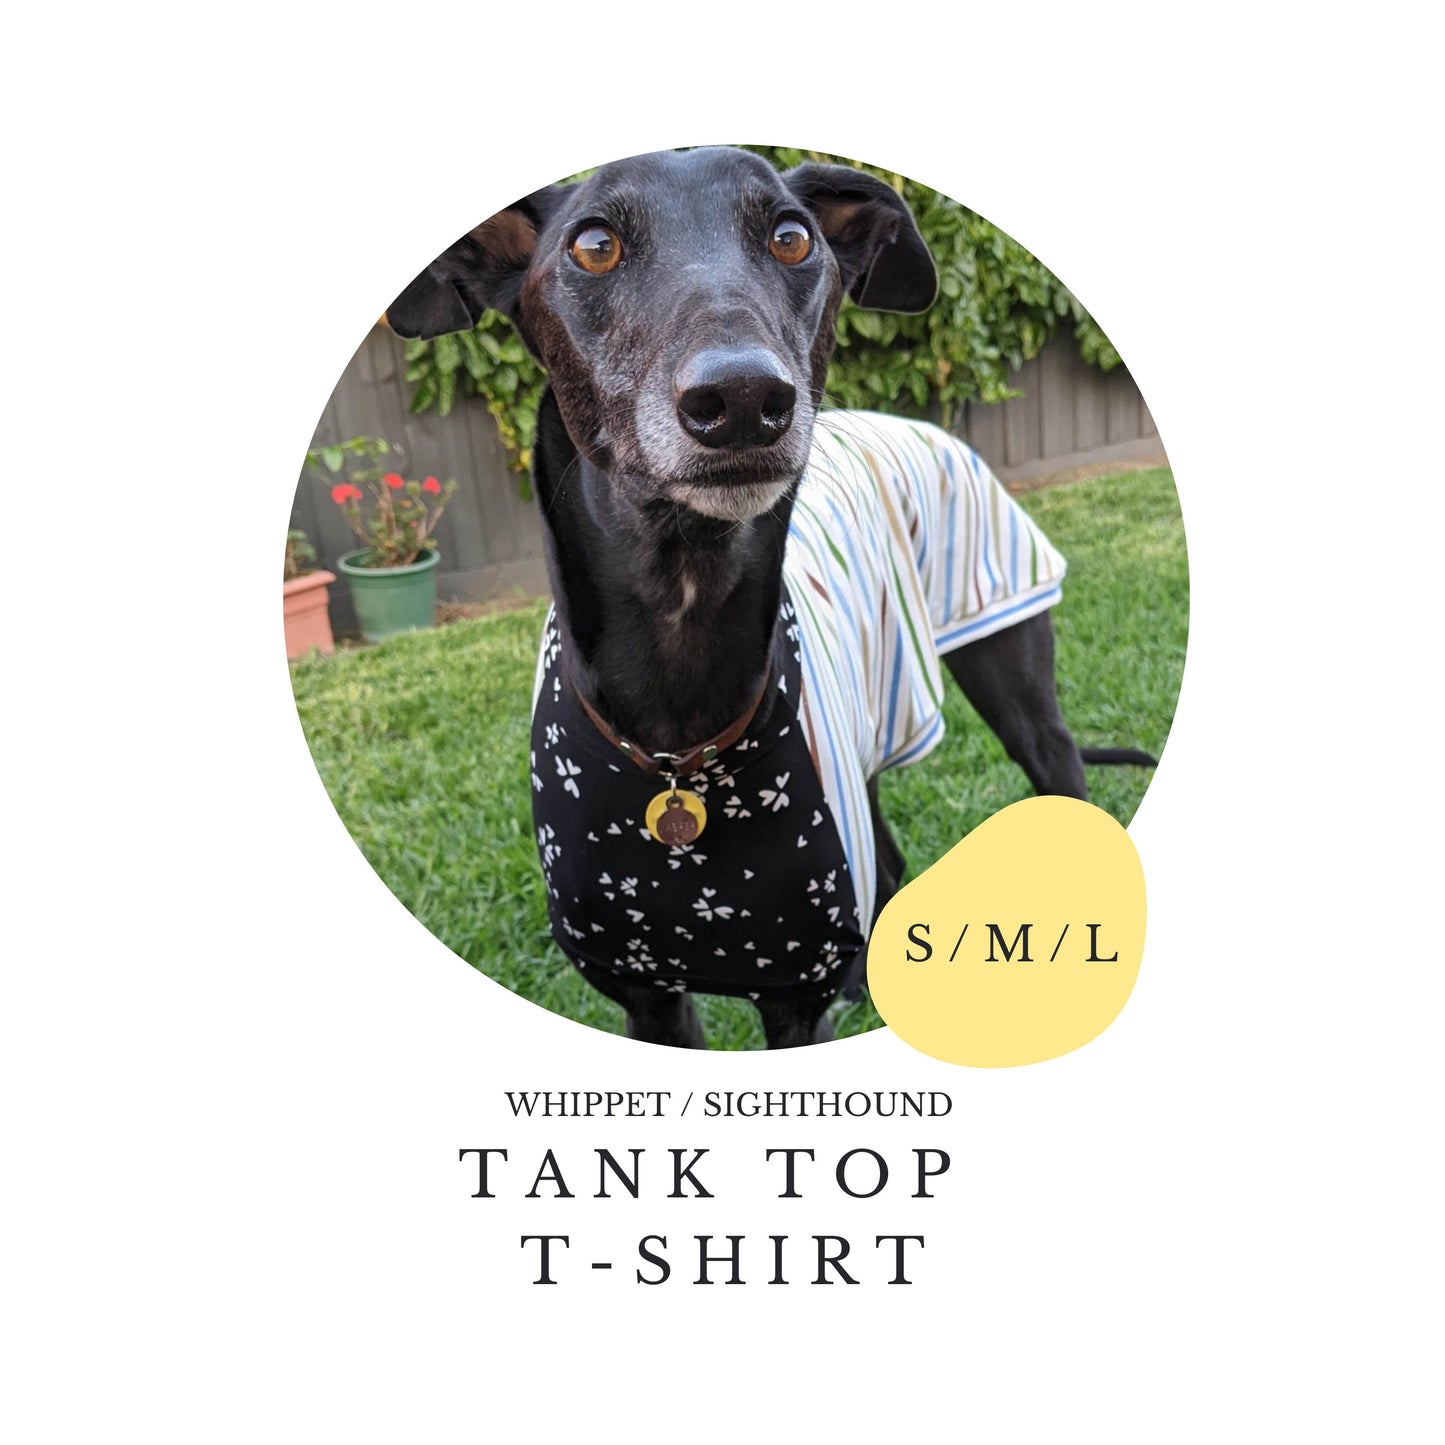 S/M/L Whippet Tank Top T-shirt